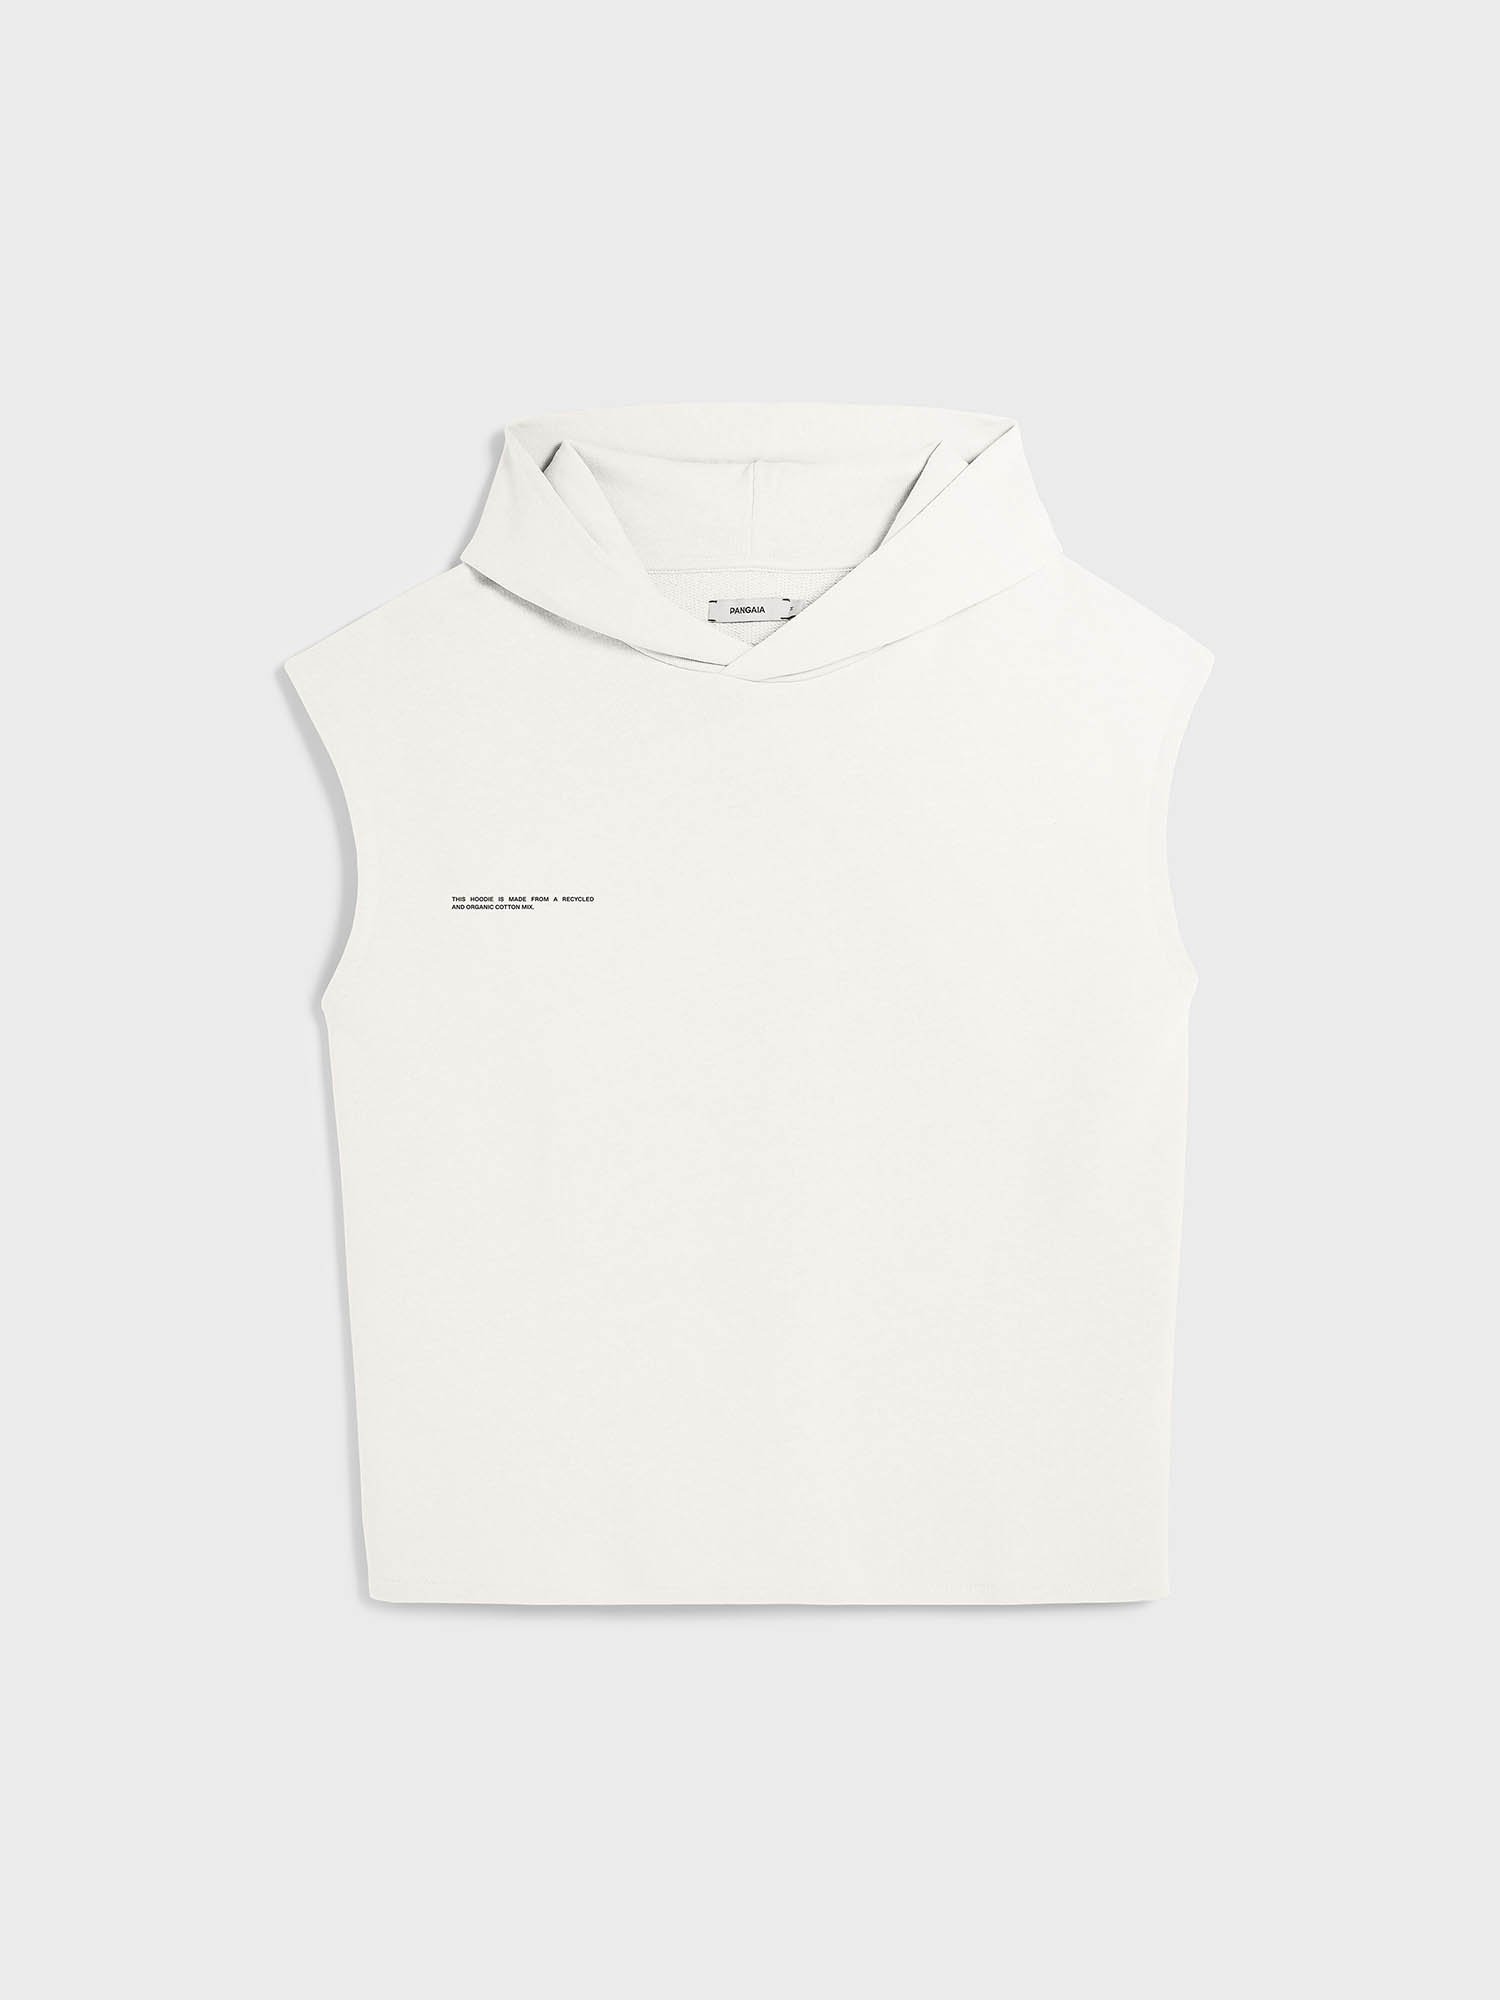 Cotton zipper sleeveless shirt